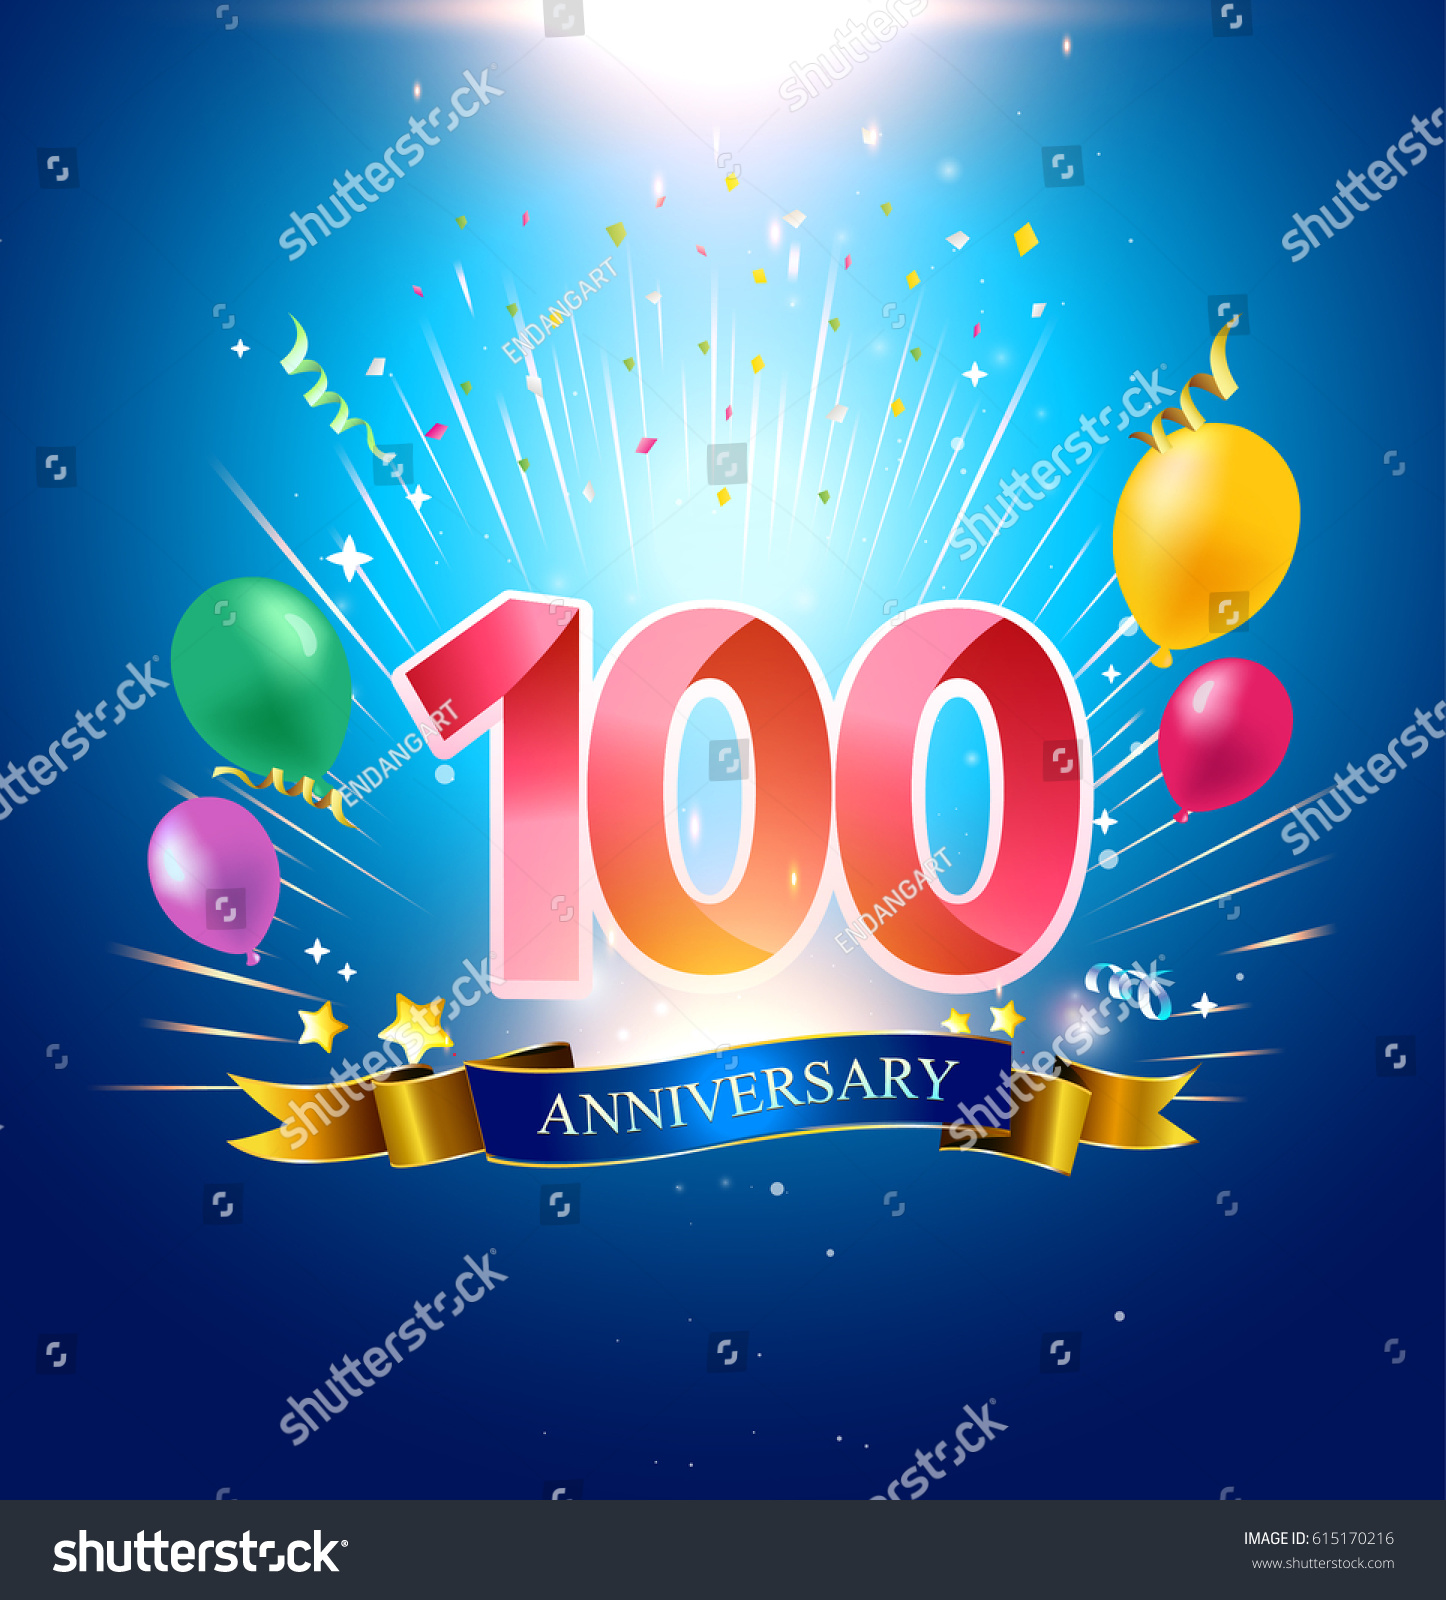 100th Anniversary Balloon Confetti Blue Background Stock Vector ...